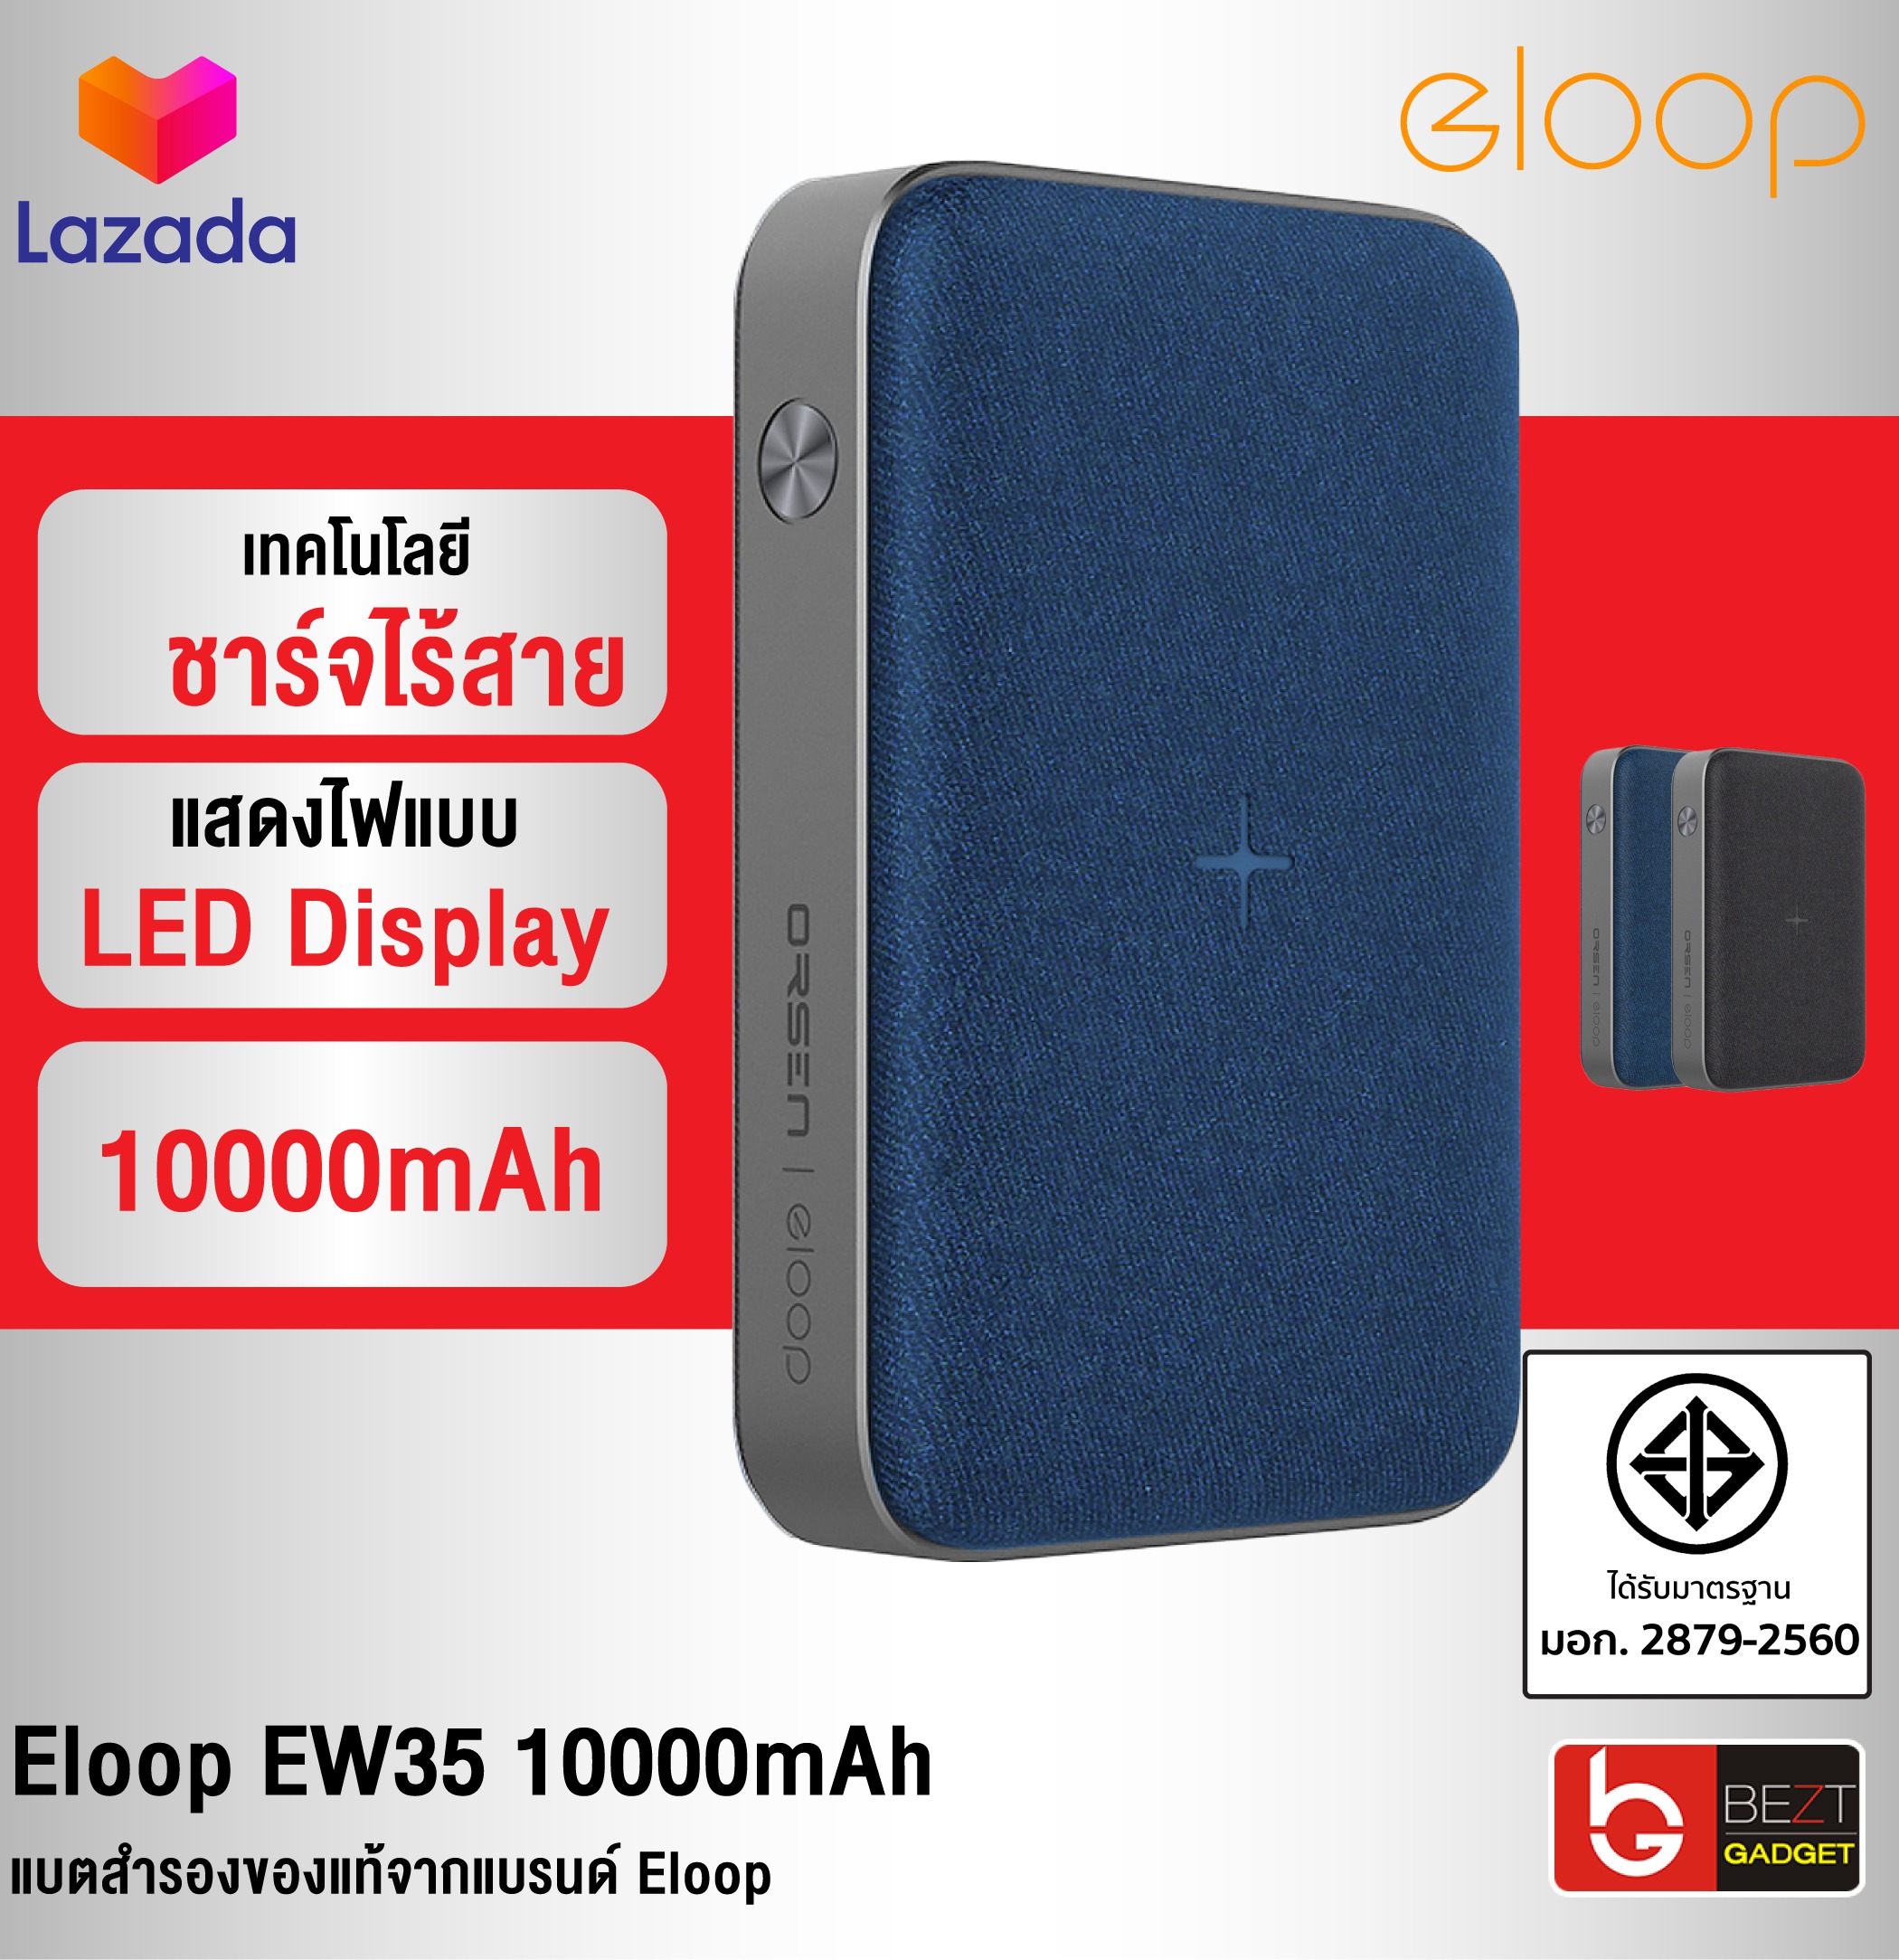 [แพ็คส่งเร็ว1วัน] Eloop EW35 10000mAh 18W แบตสำรองชาร์จไร้สาย Quick Charge 3.0 มี LED ชาร์จเร็ว หุ้มผ้า ฟรีซองผ้า มาตรฐานมอก.